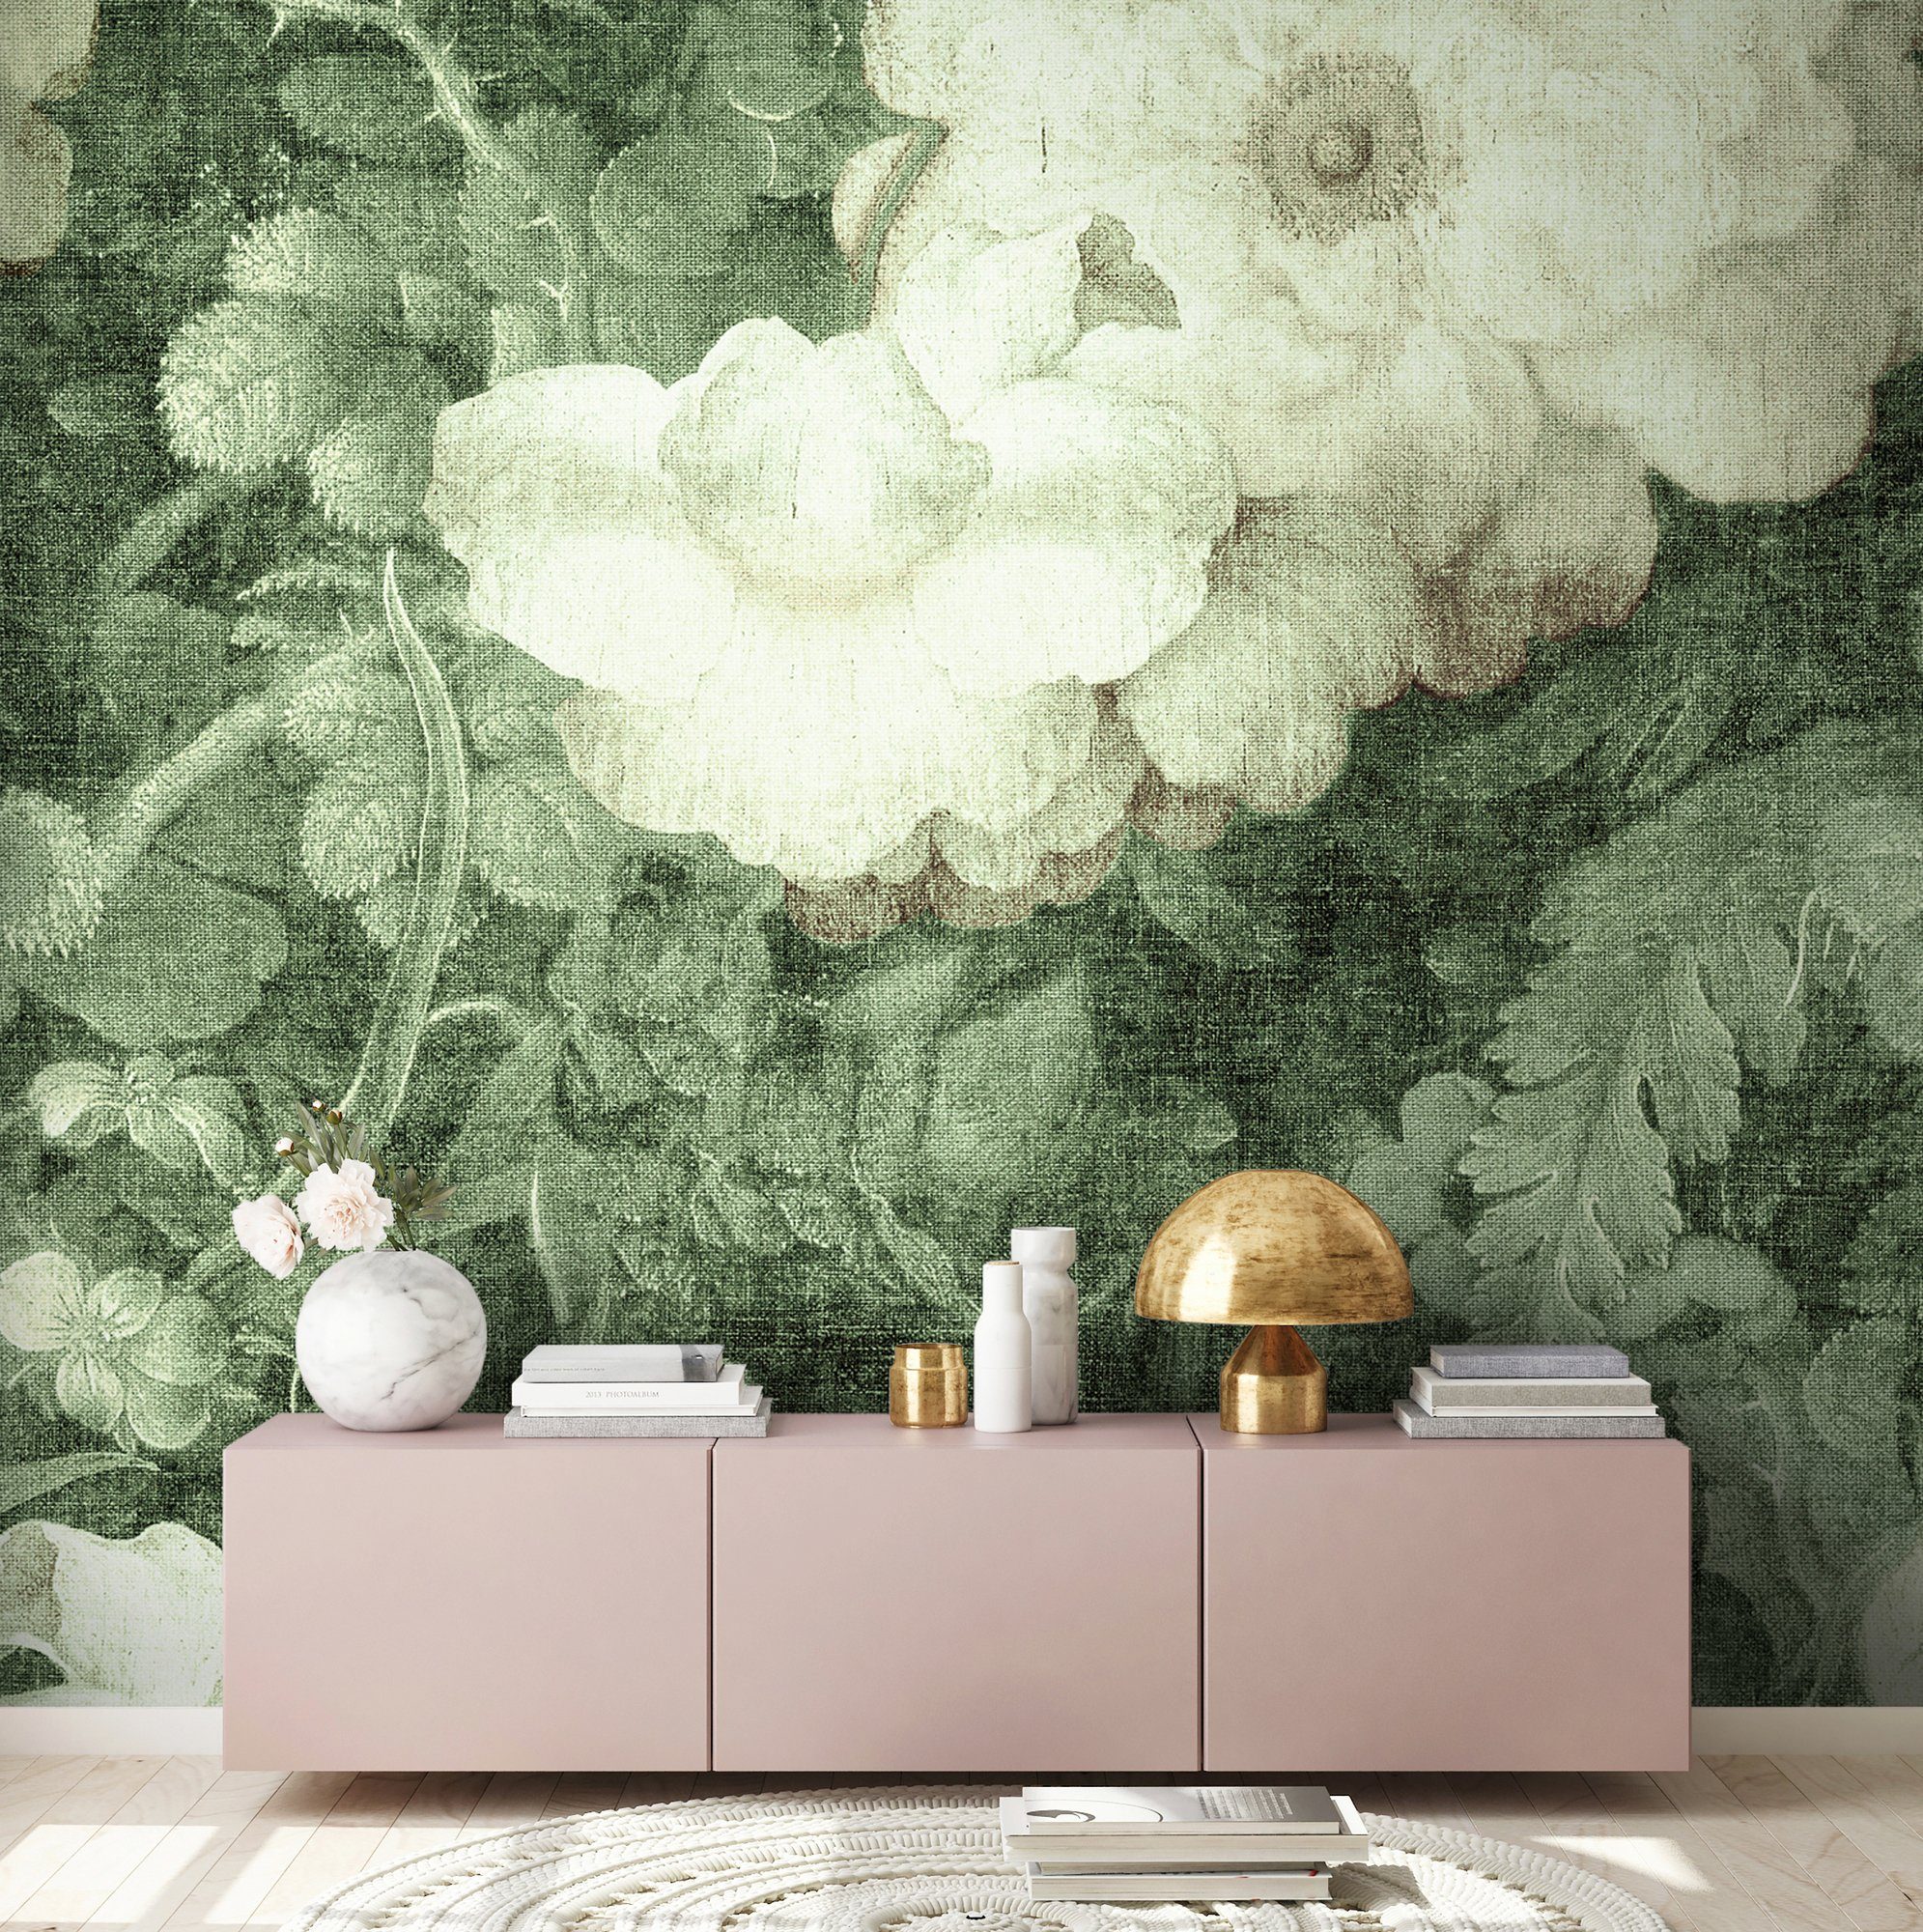 Paper glatt, Art 2, 47 Architects Atelier Schräge, Fototapete floral, Wand, Decke (4 Blossom Vlies, hellgrün/creme/weiß St),